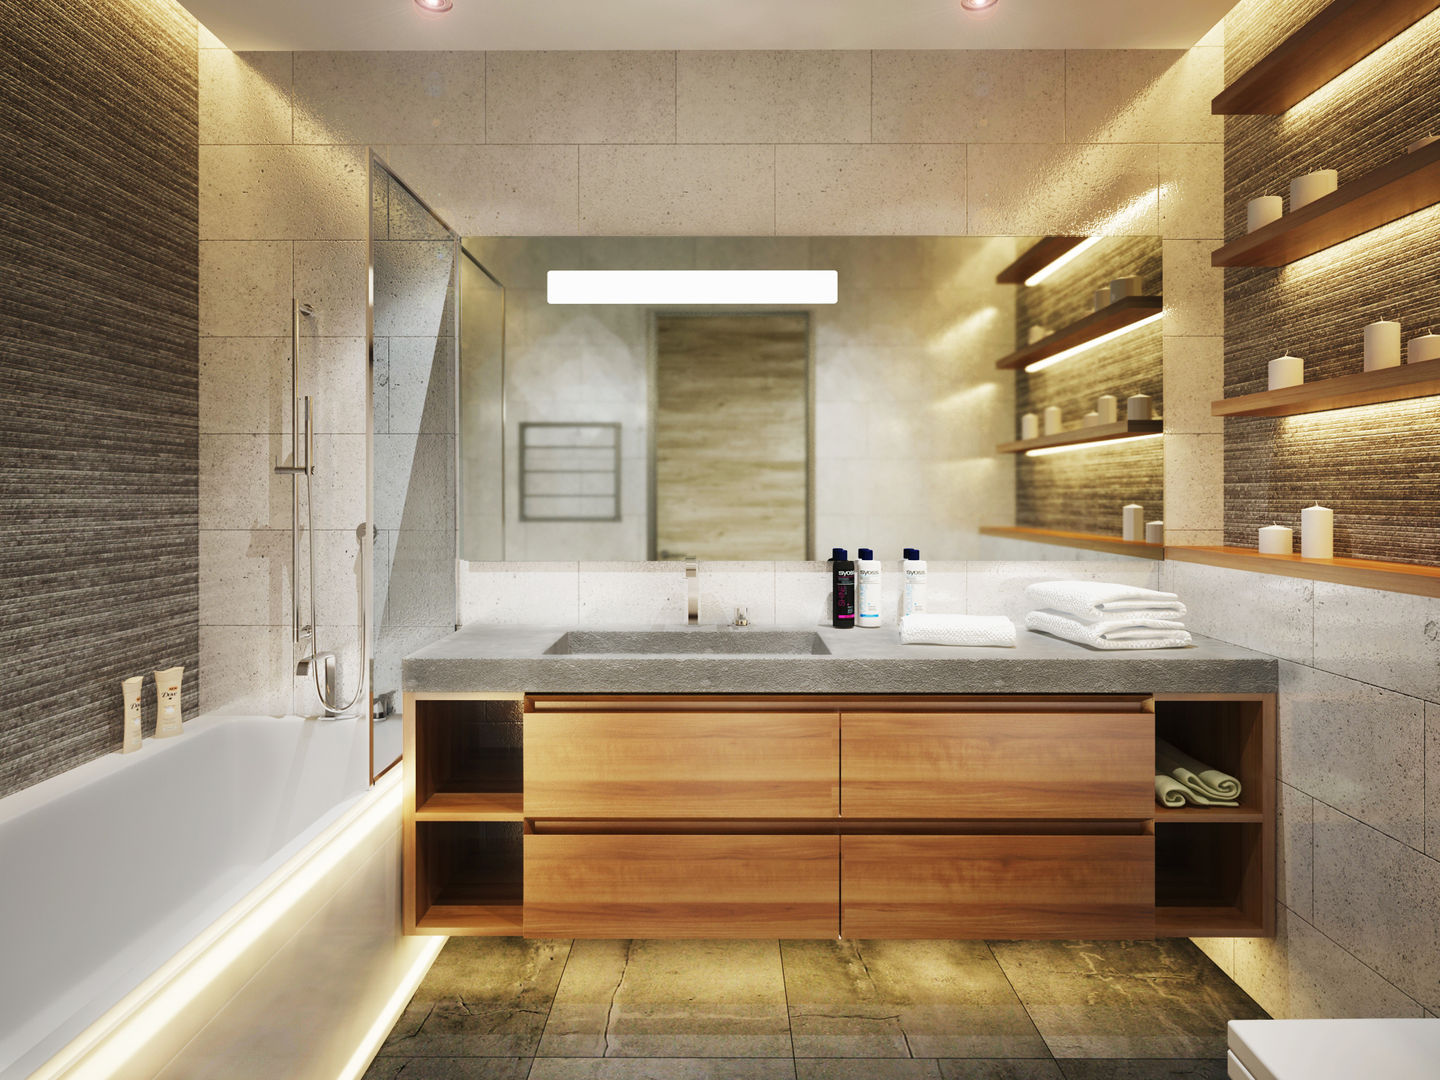 Квартира в современном минимализме, Polovets design studio Polovets design studio ห้องน้ำ